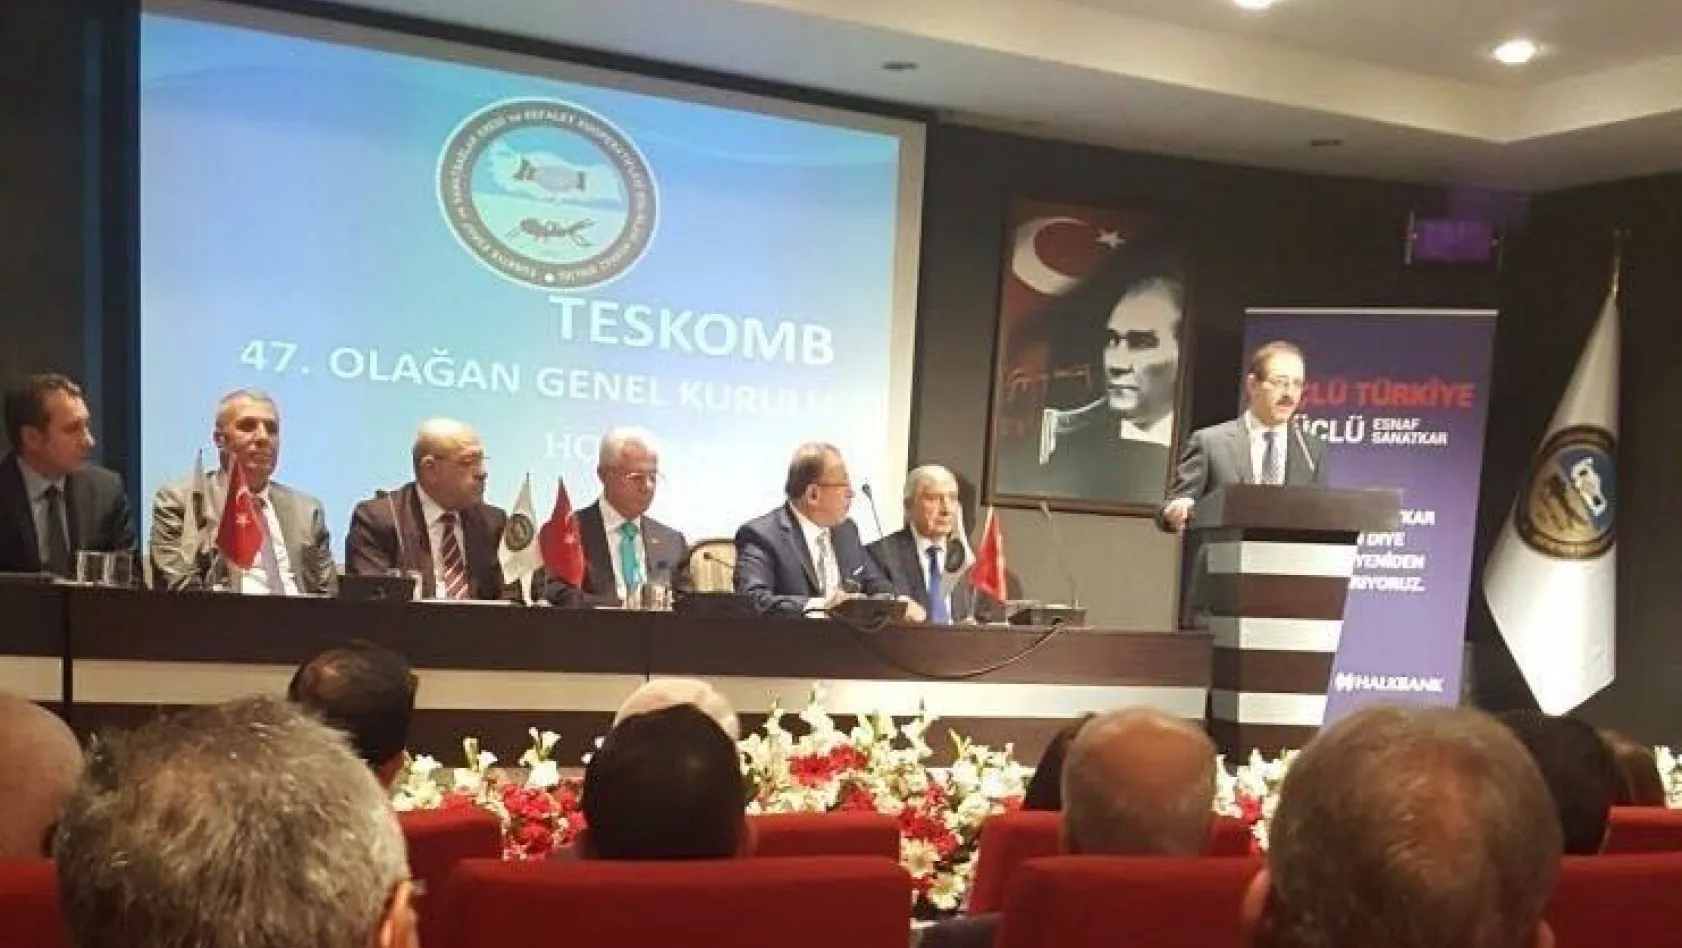 Ali Evren TESKOMB Üst Kurul Üyeliğine yeniden seçildi
